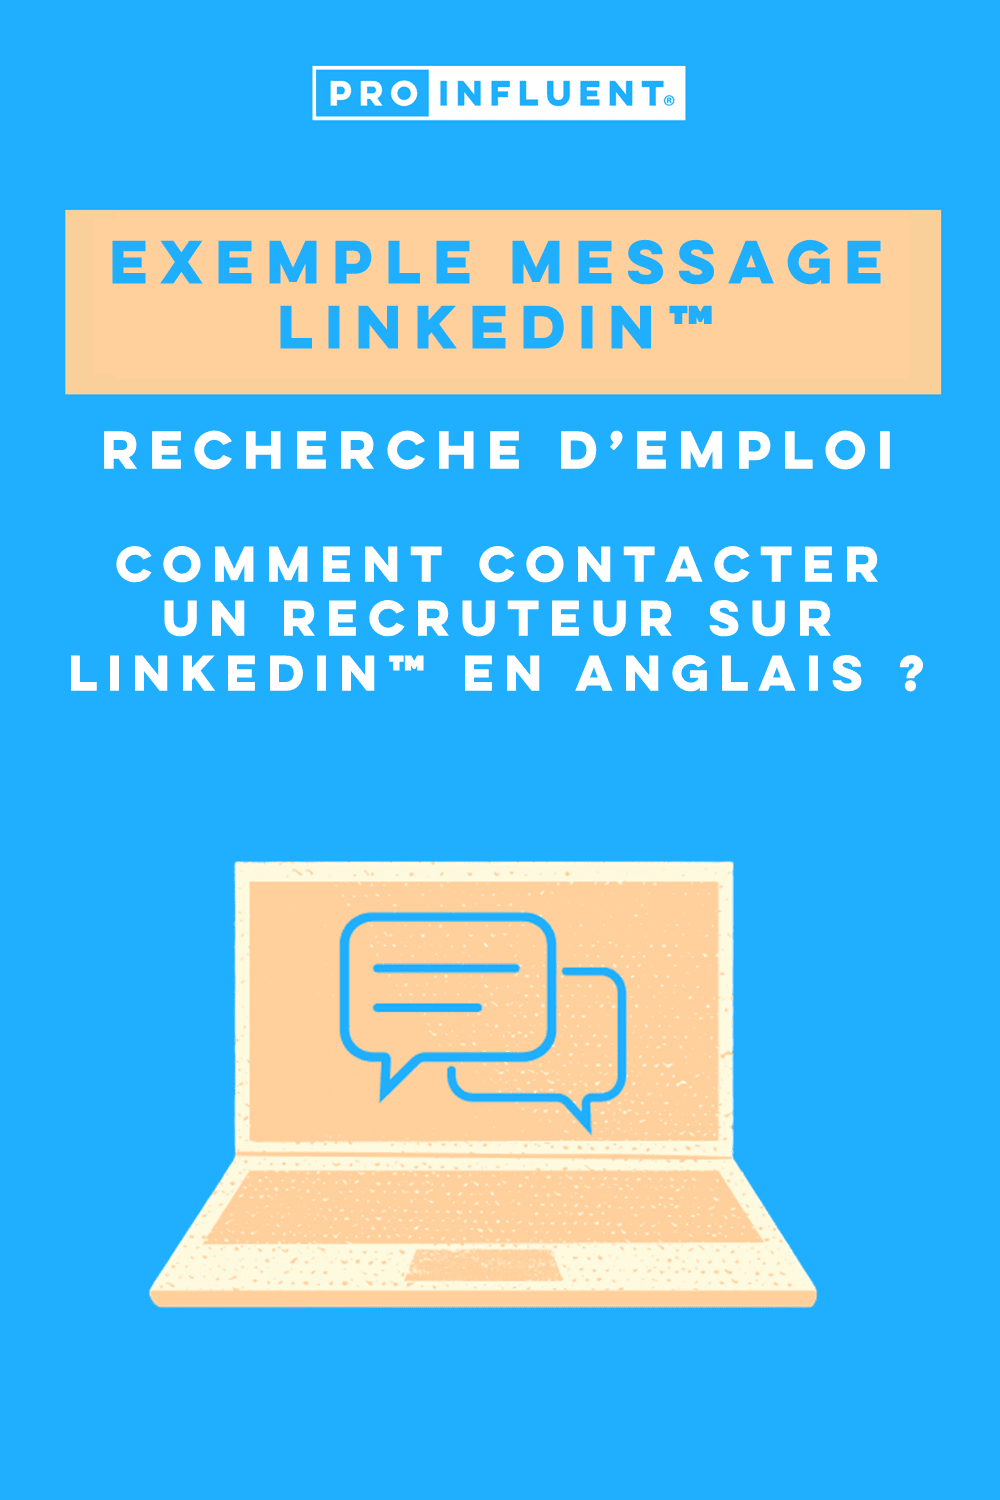 Exemple message LinkedIn™ recherche emploi : Comment contacter un recruteur sur LinkedIn™ en anglais ?